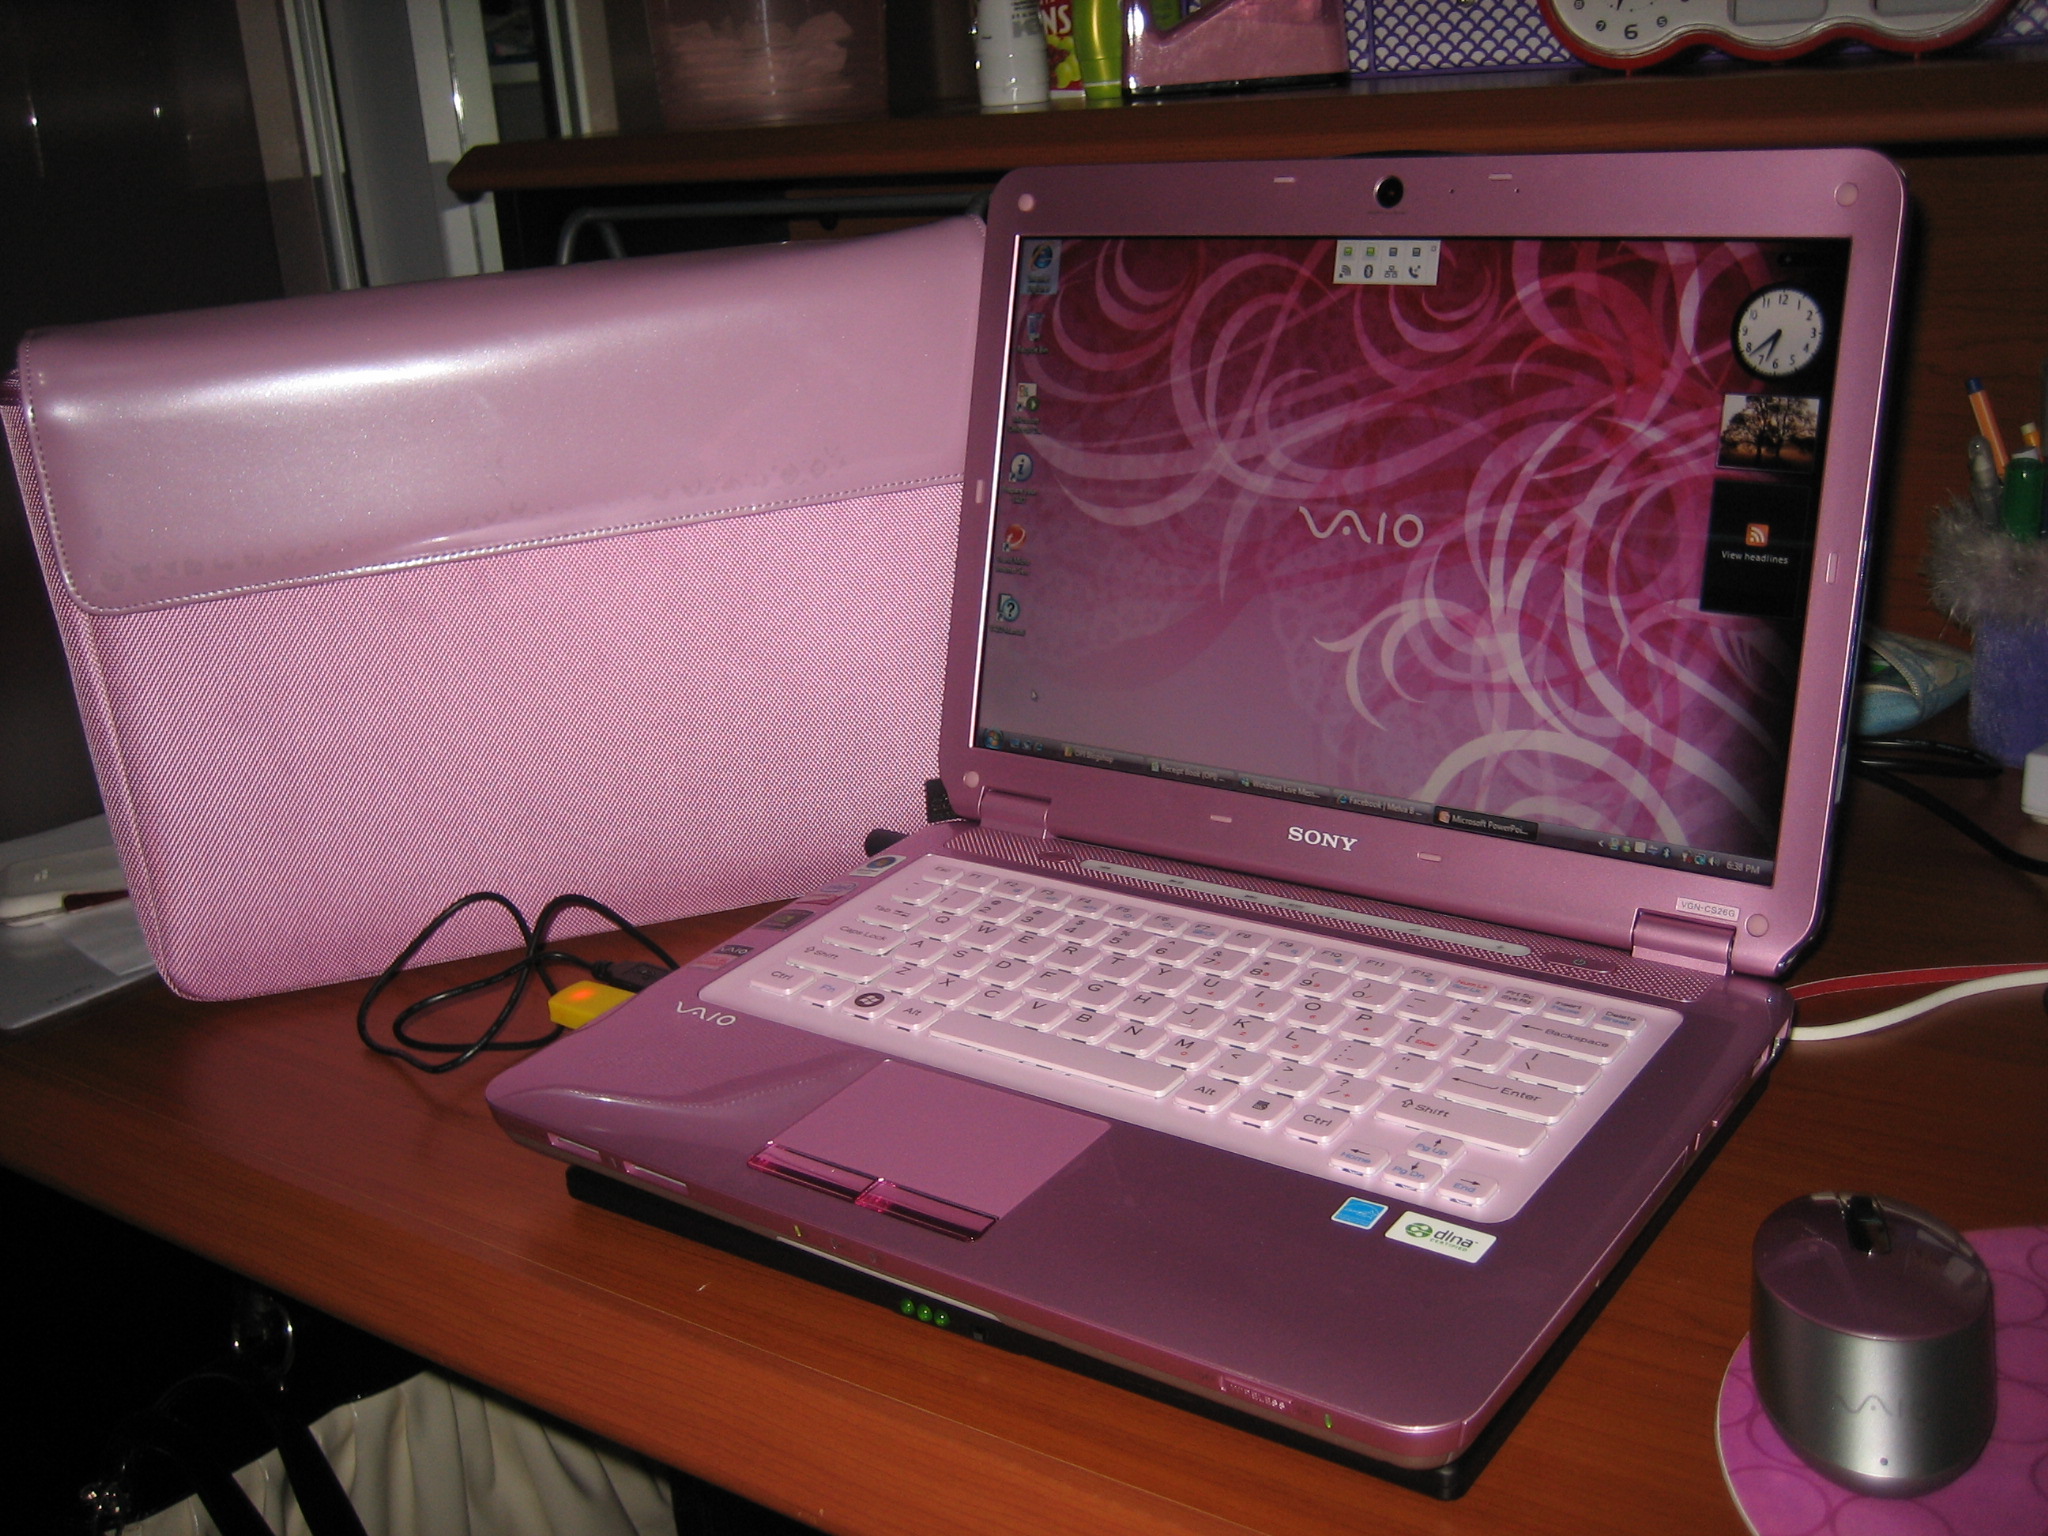 Розовый ноутбук купить. Сони Вайо розовый ноутбук. Нетбук сони Вайо. Sony VAIO розовый 2009. Нетбук Sony VAIO розовый.